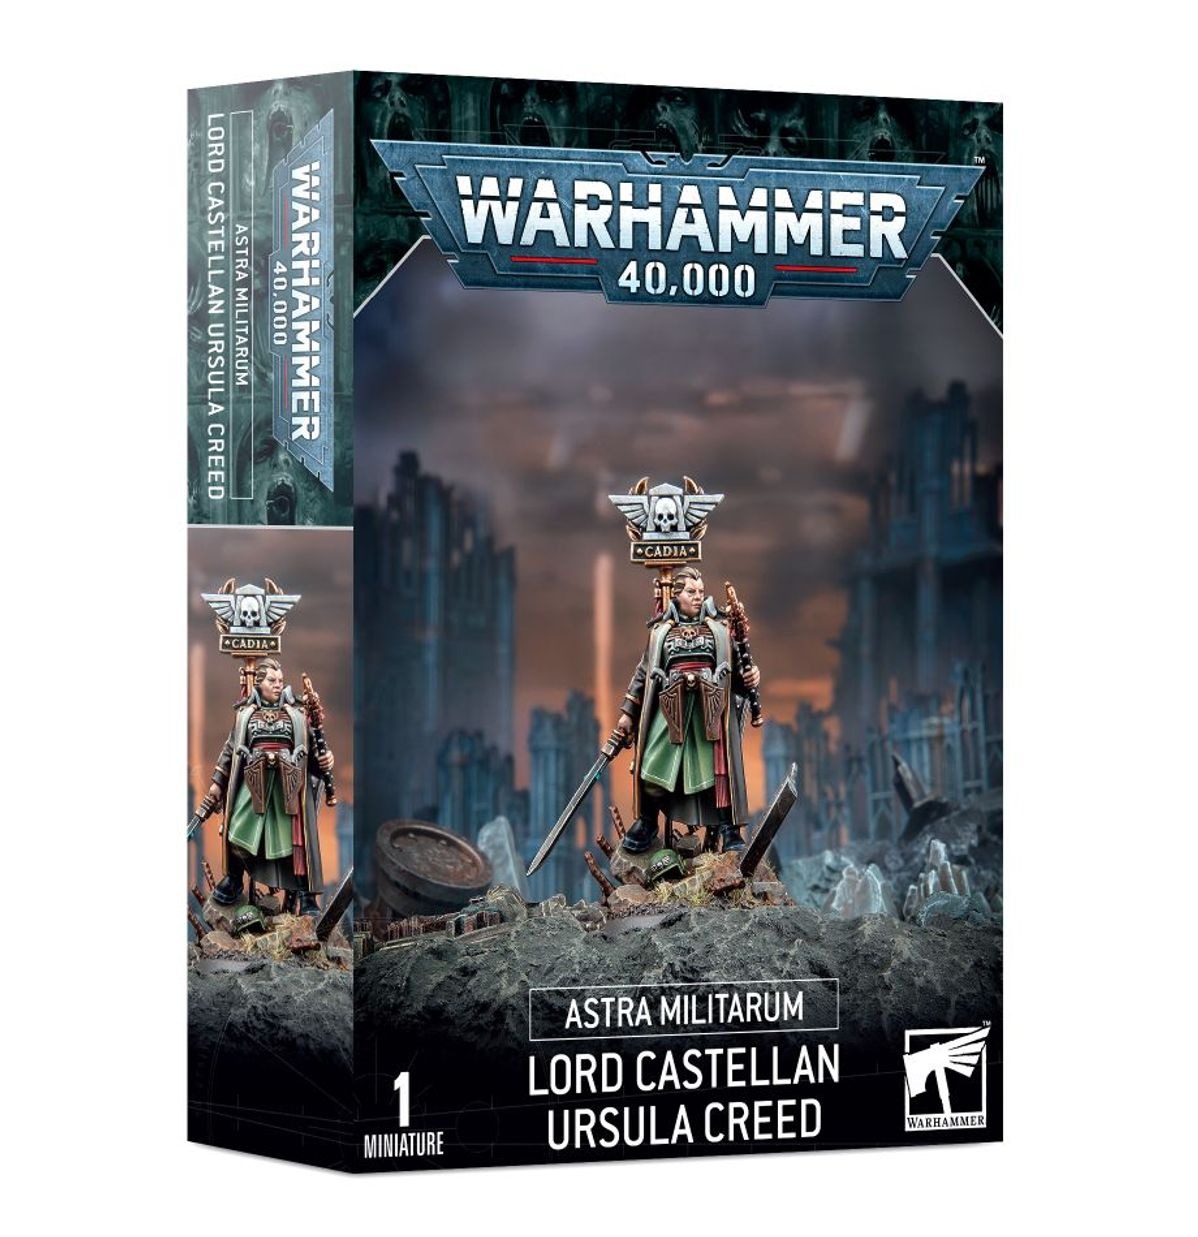 Миниатюры для игры Games Workshop Warhammer 40000: Lord Castellan Ursula Creed 47-32 скипетр оттокара